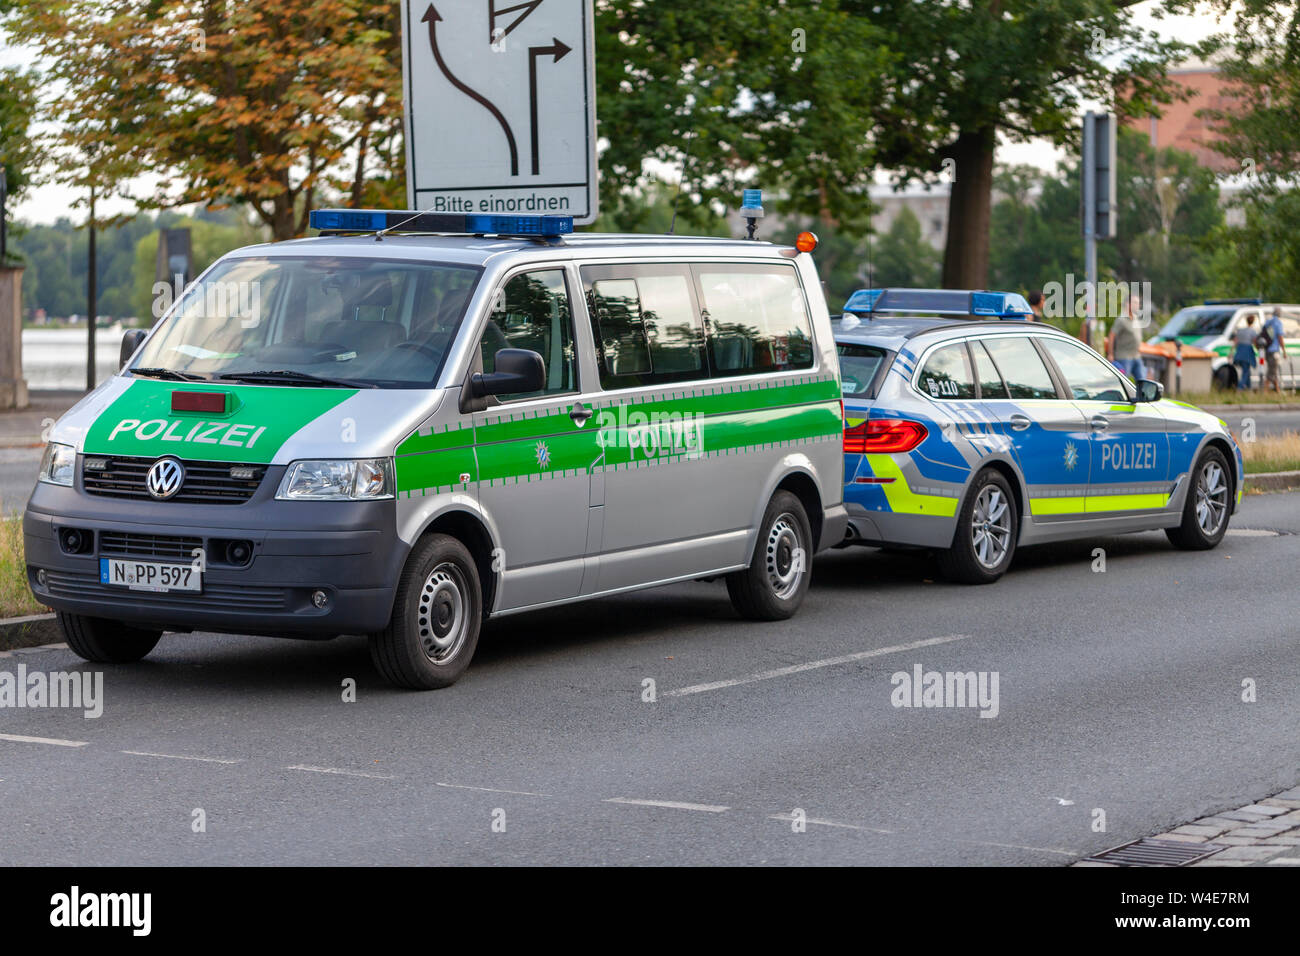 Nürnberg/Deutschland - vom 22. Juli 2019: Polizei Auto von der deutschen  Polizei steht auf einer Straße. Polizei ist das deutsche Wort für Polizei  Stockfotografie - Alamy